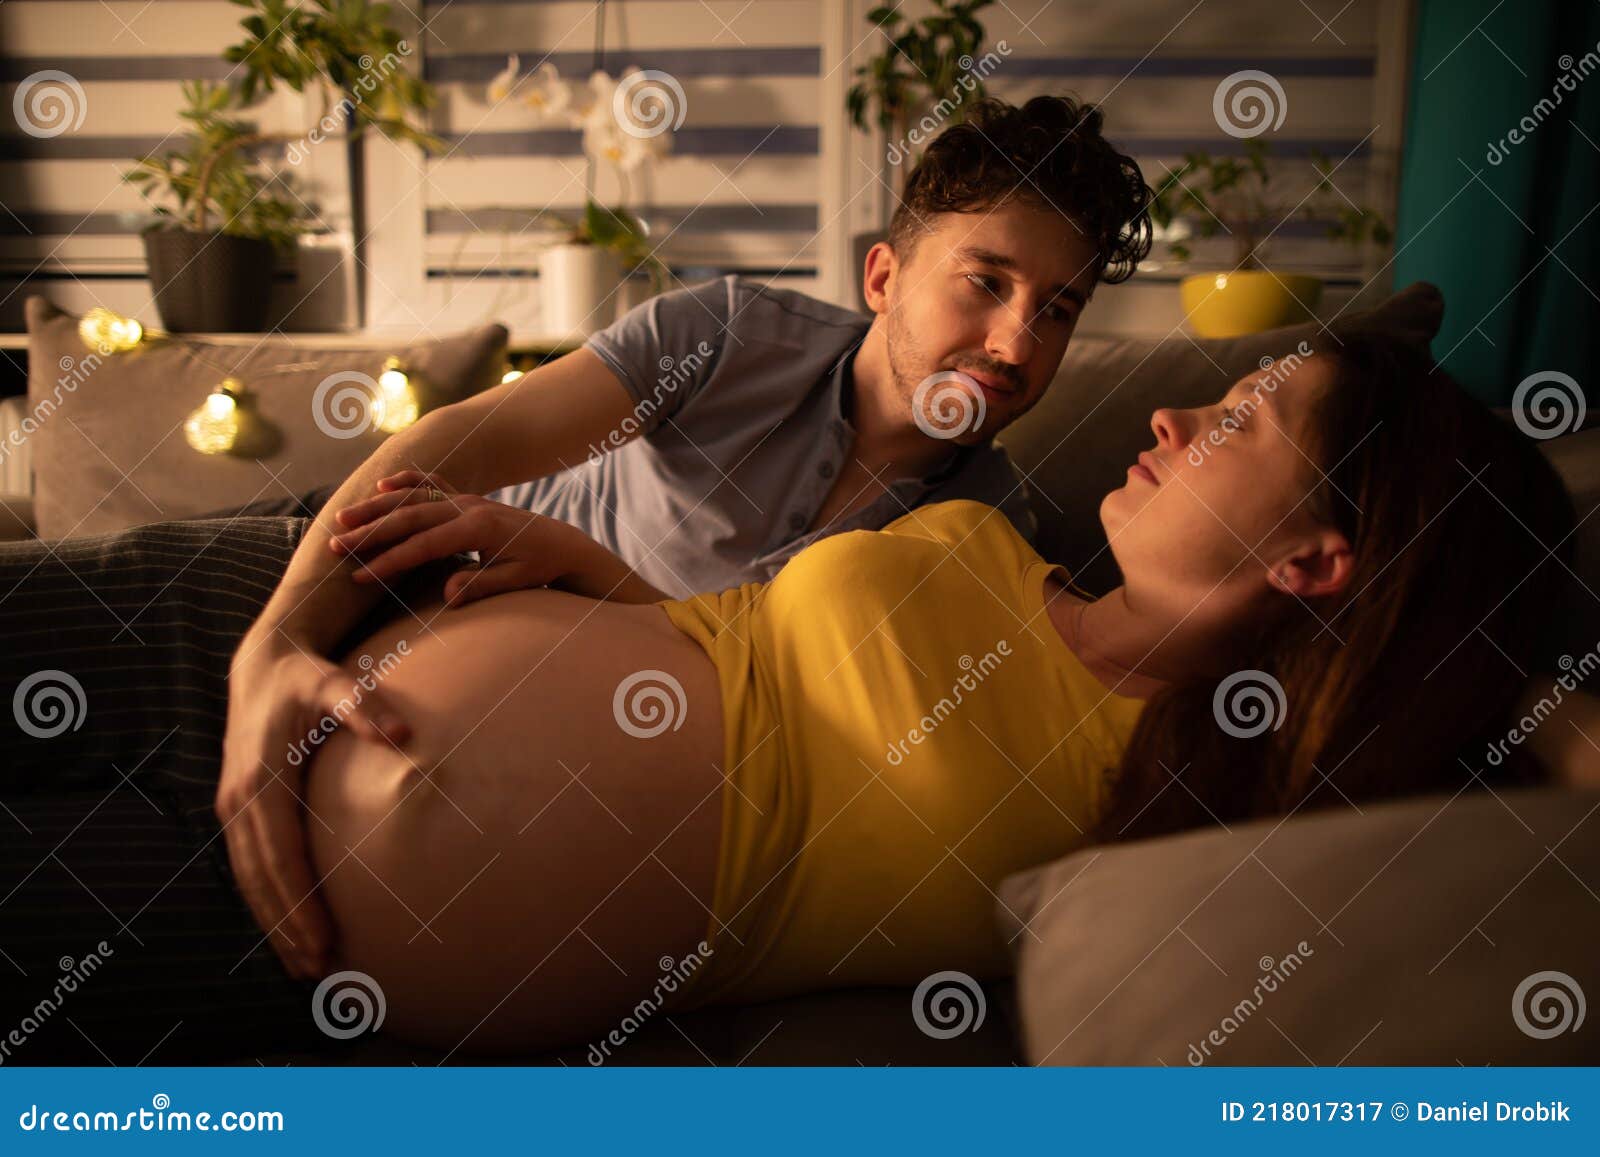 Русская измена беременной. Муж обнимает беременную жену. Муж обнимает супругу. Муж обнимает жену в кровати. Лежим на кровати с женой с беременной.